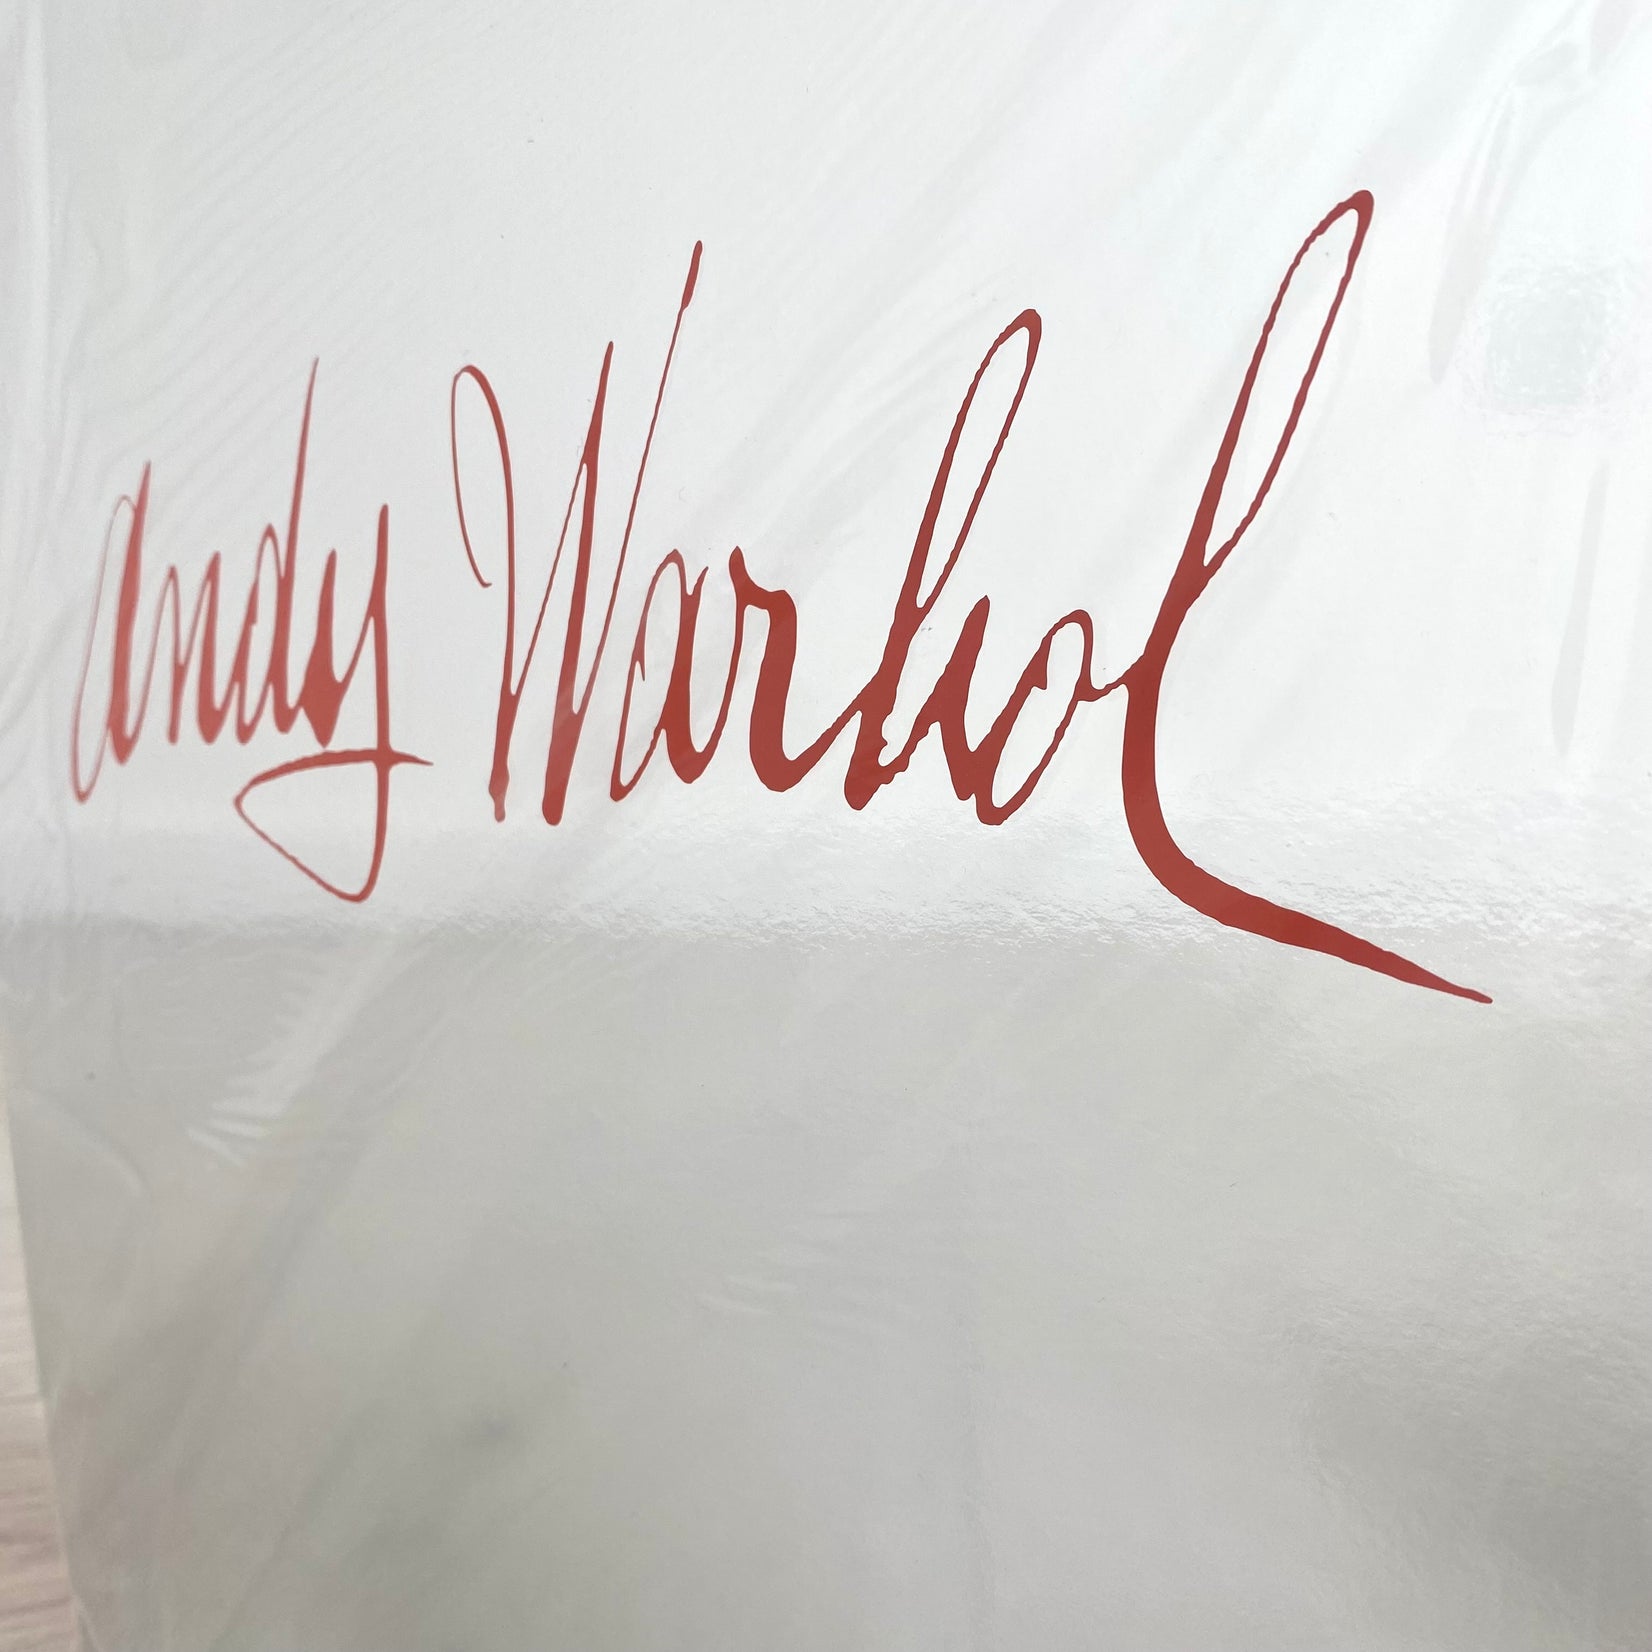 Tiffany & Co Andy Warhol Advent Calendar, 2022